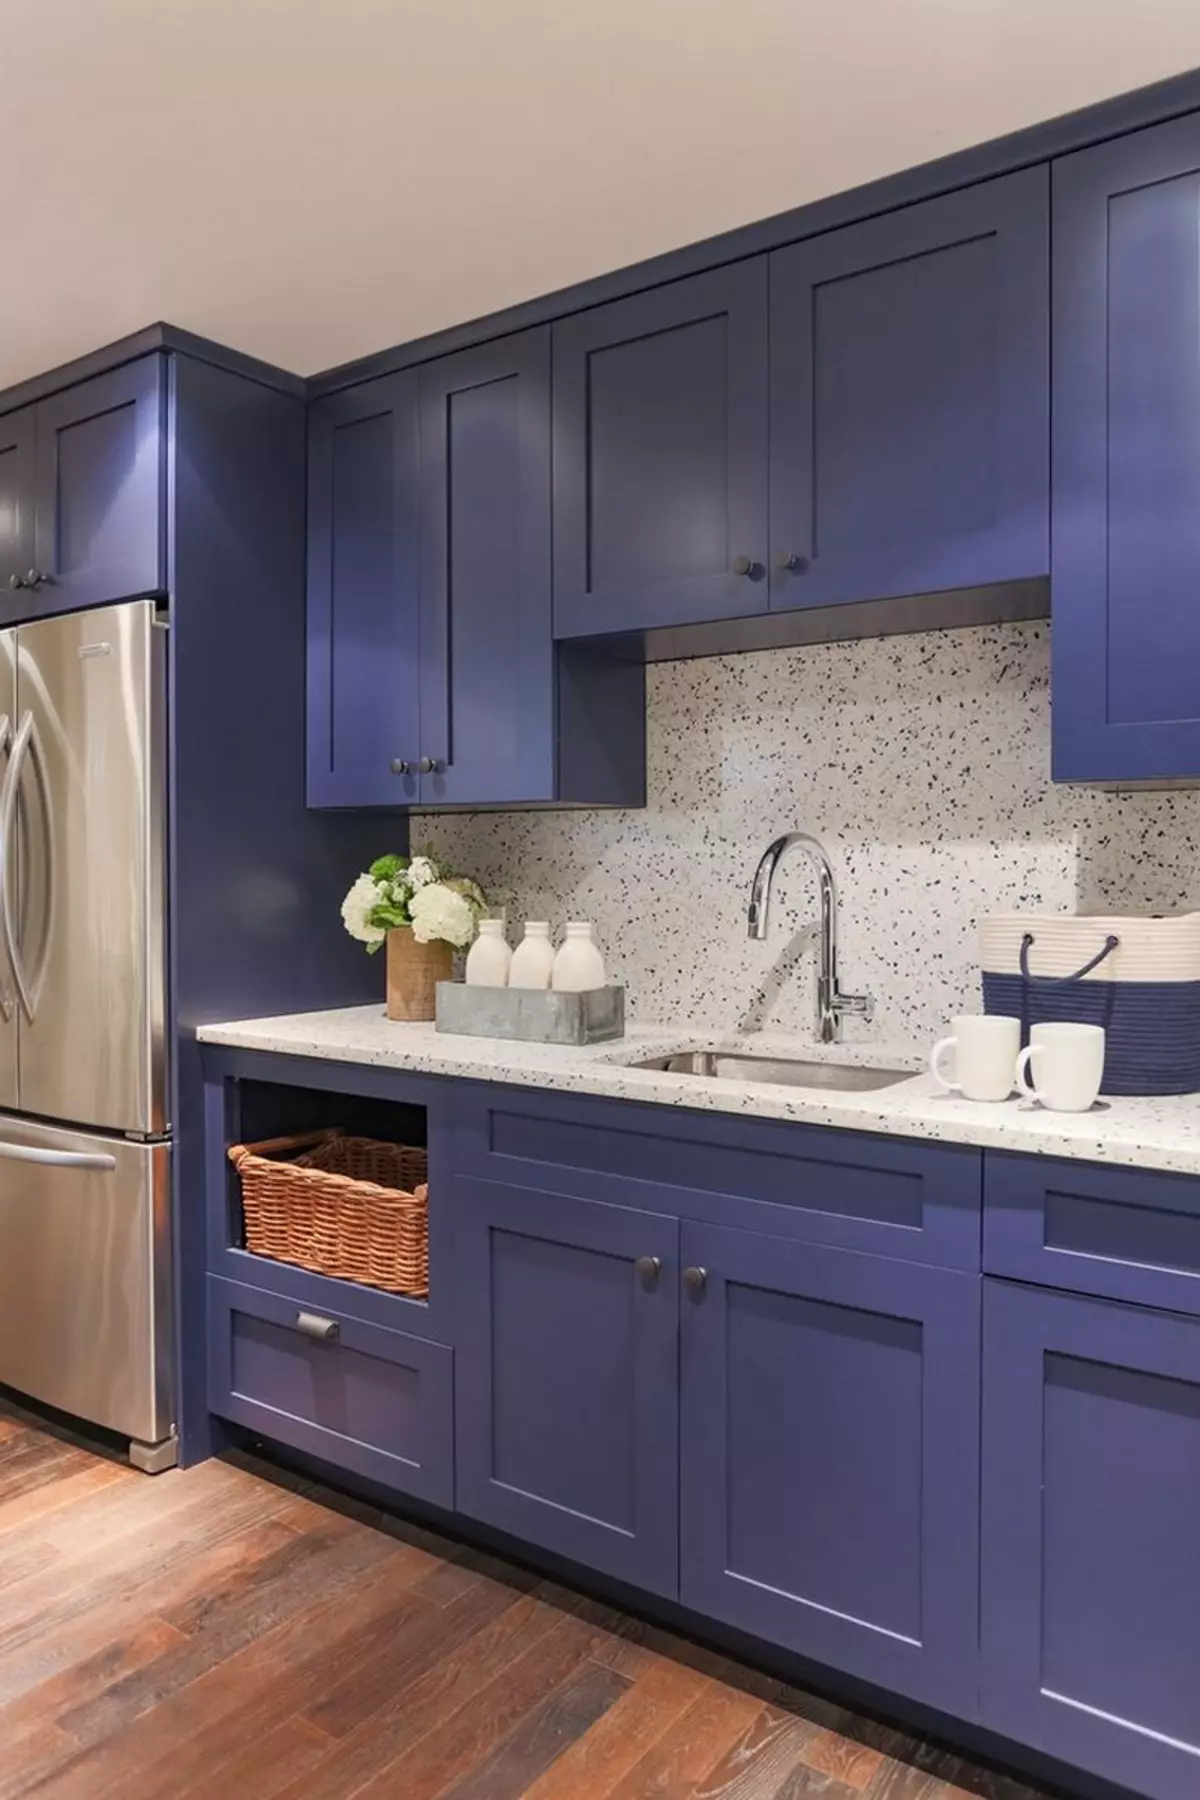 藍廚房（82張照片）：在藍色廚房套裝內部合併哪種顏色？淺藍色和深藍色色調的廚房設計 9555_11